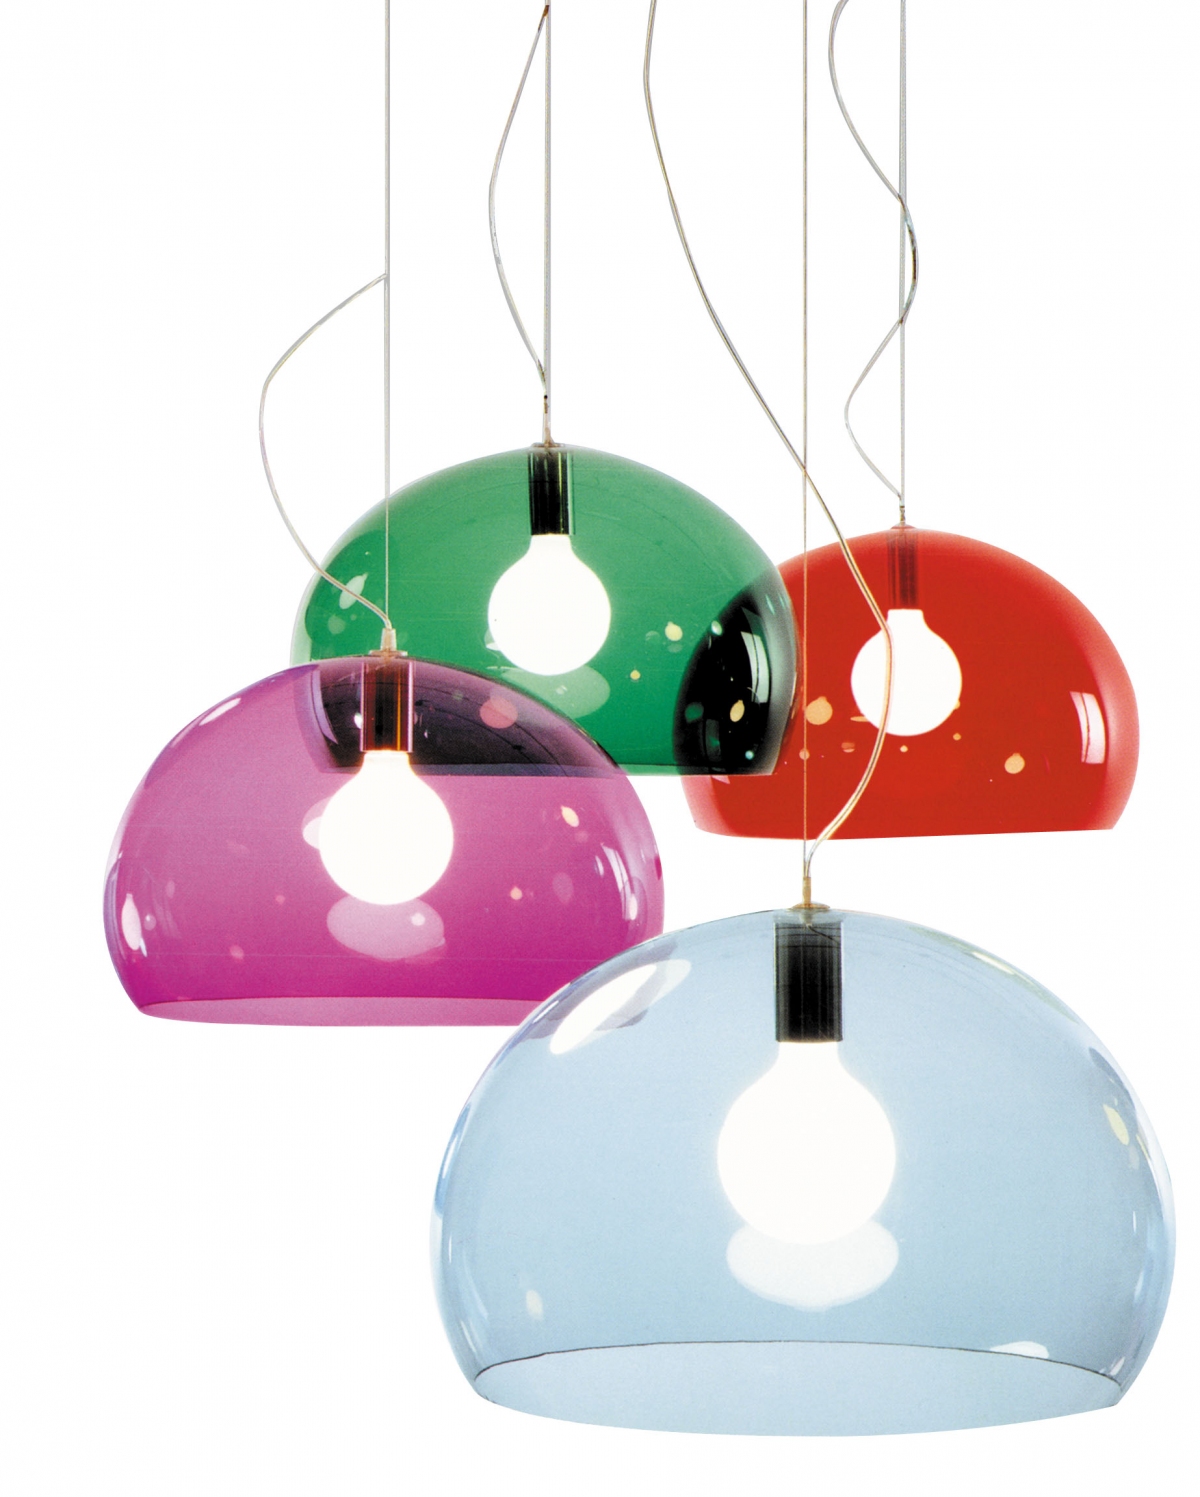 9030 hanglamp "Kartell" | Hulshoff Design Centers